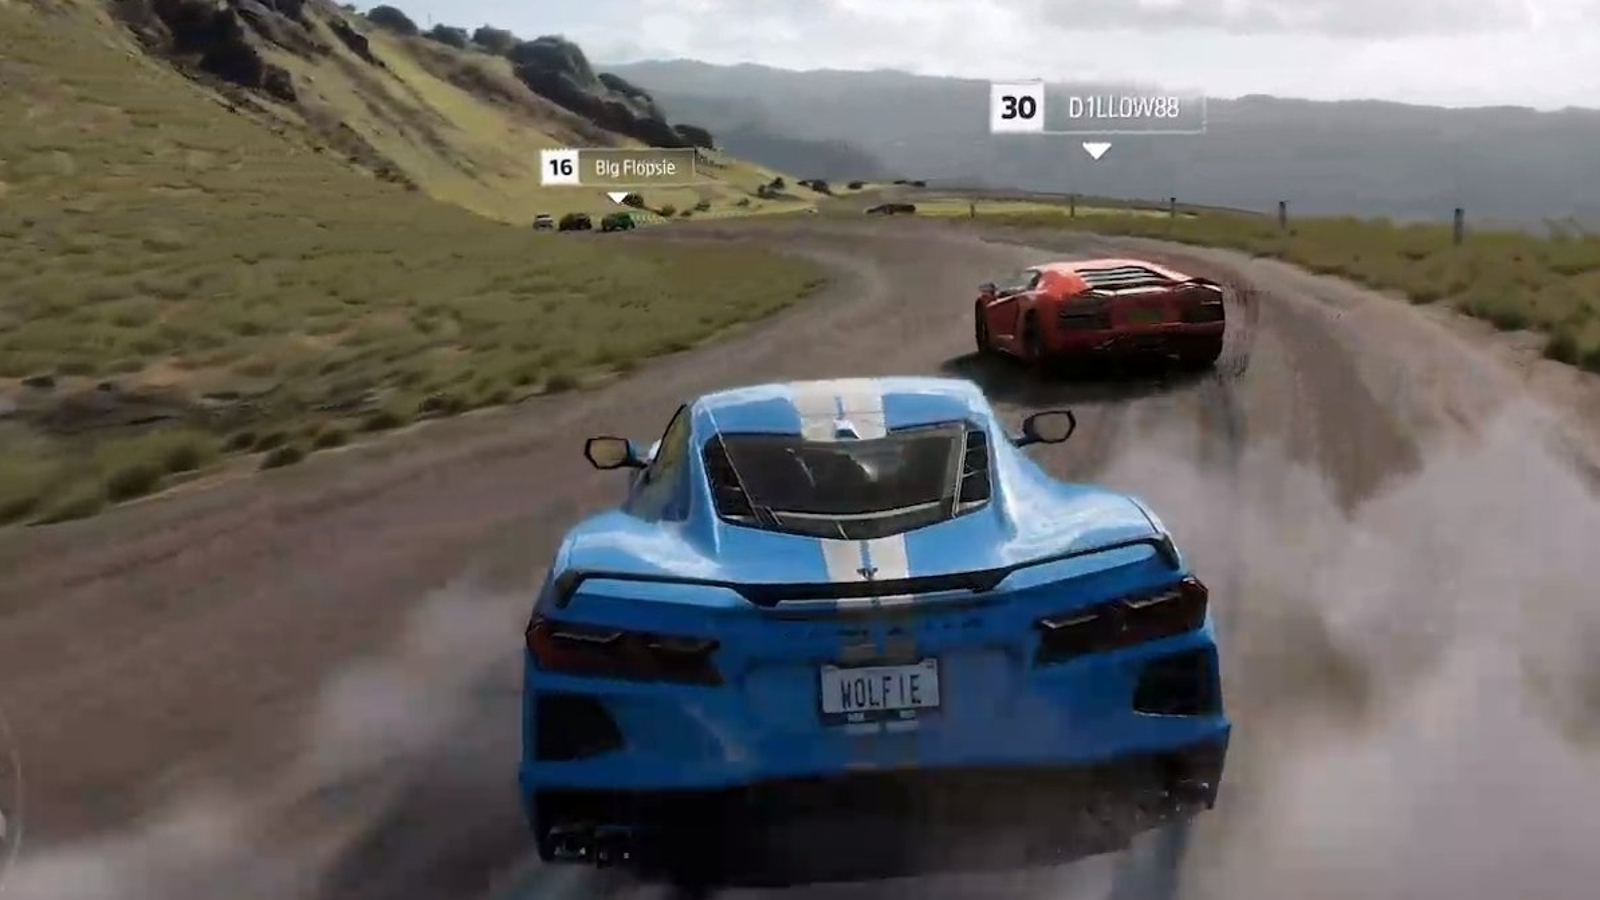 Forza Horizon 5 Official Gameplay Demo - Xbox & Bethesda Games Showcase  2021 